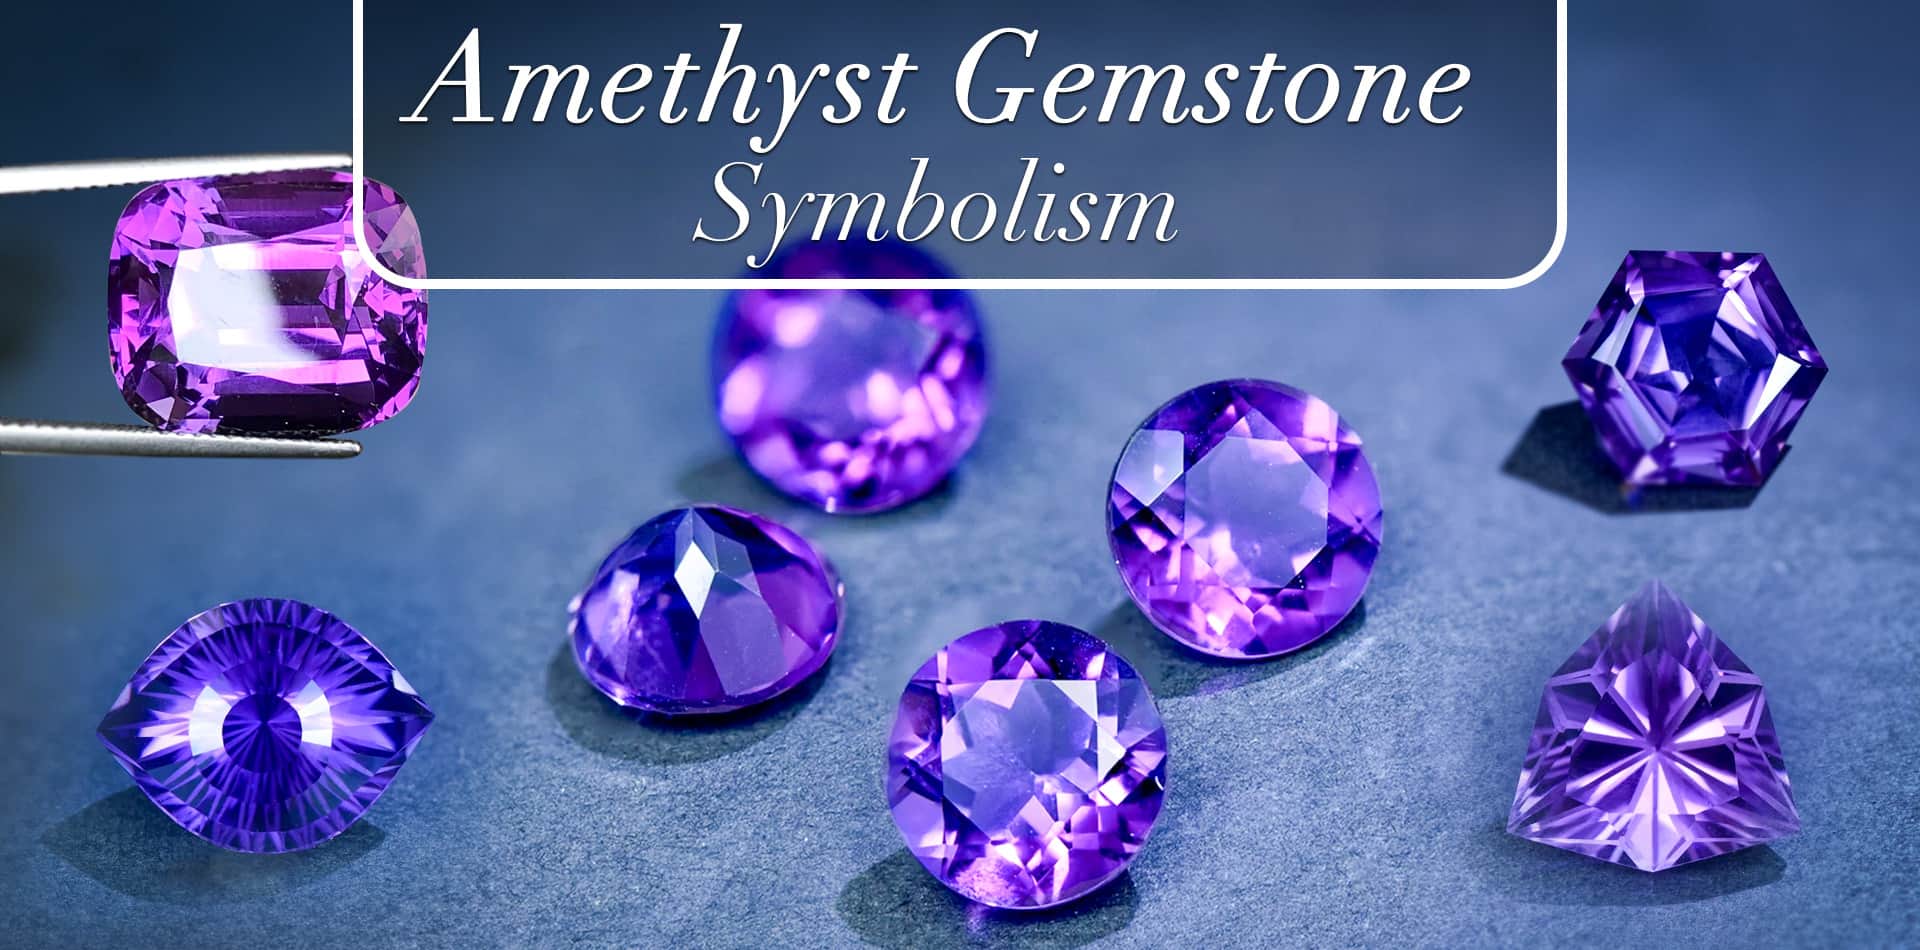 Amethyst Gemstone: Symbolism